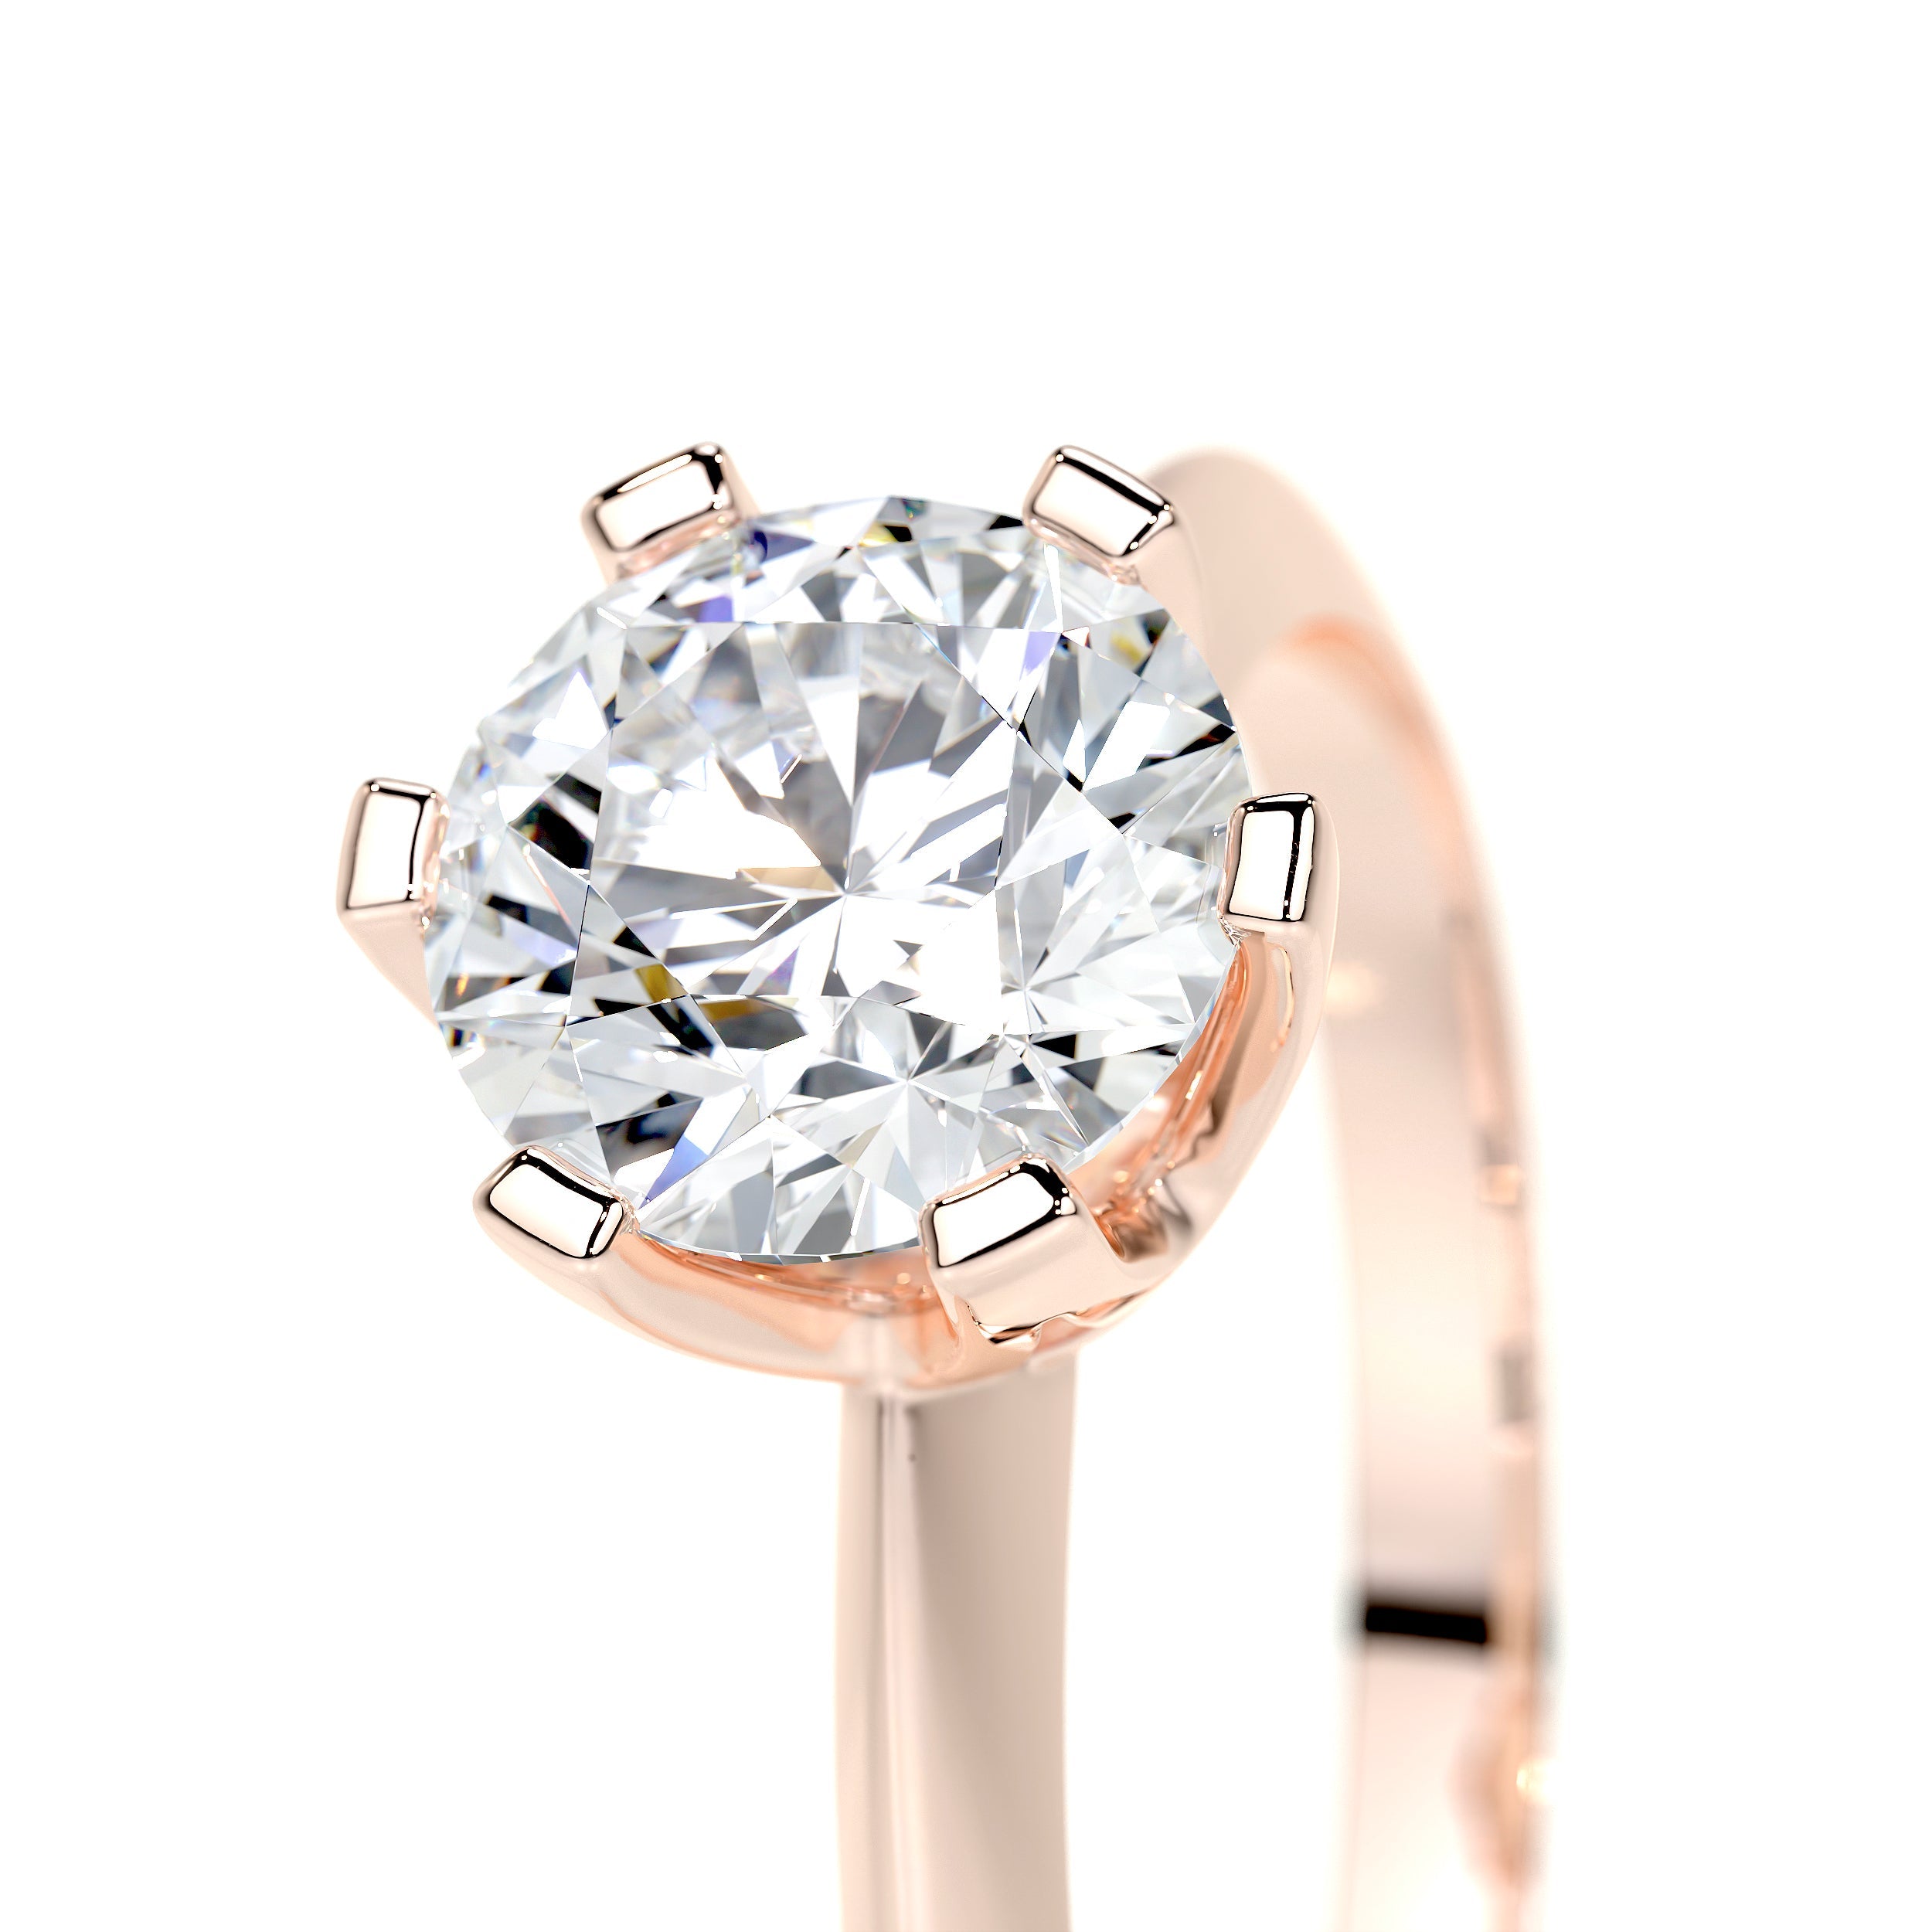 Alexis Lab Grown Diamond Ring   (1.25 Carat) -14K Rose Gold